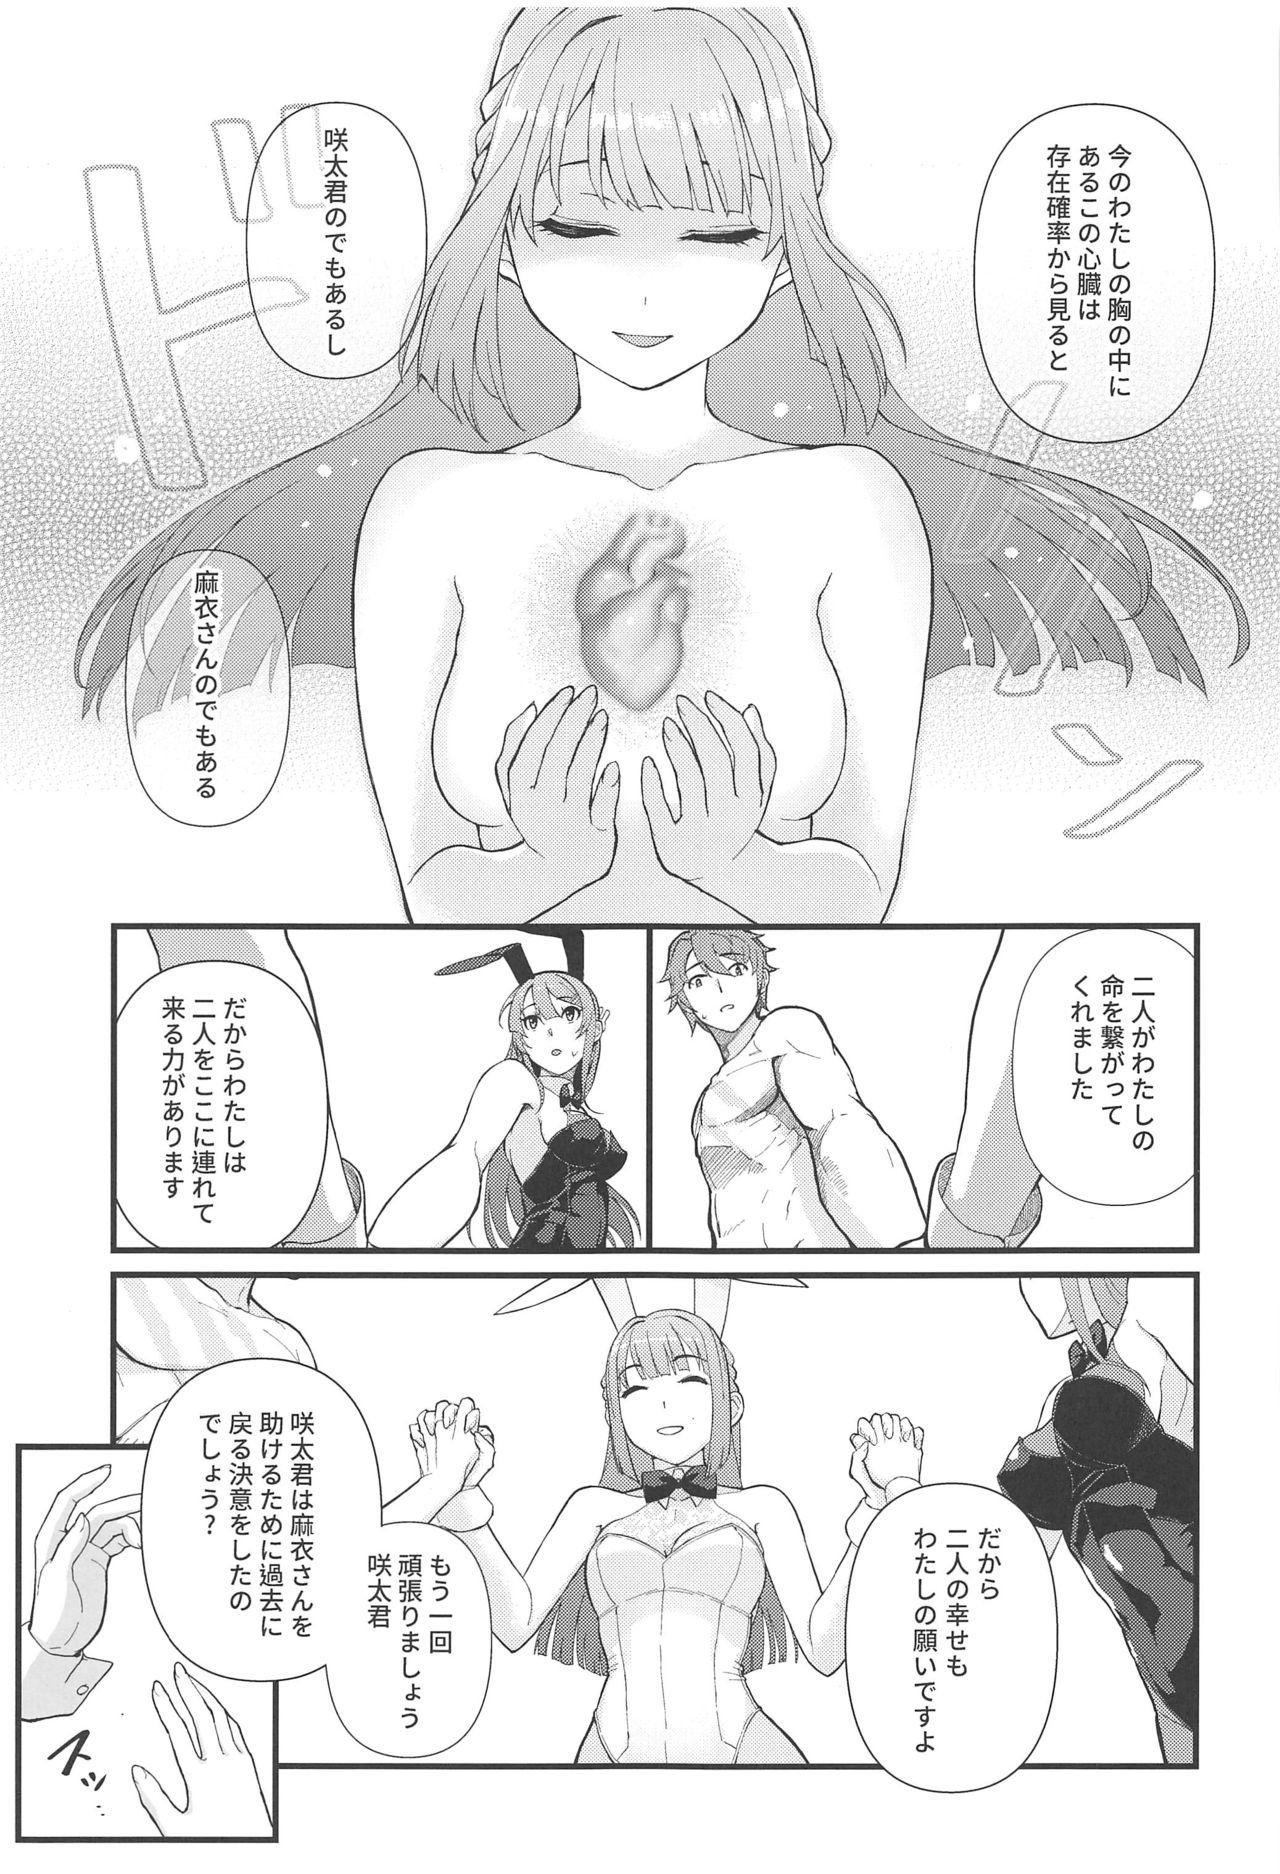 Gemidos Lucid Dream - Seishun buta yarou wa bunny girl senpai no yume o minai Funny - Page 8